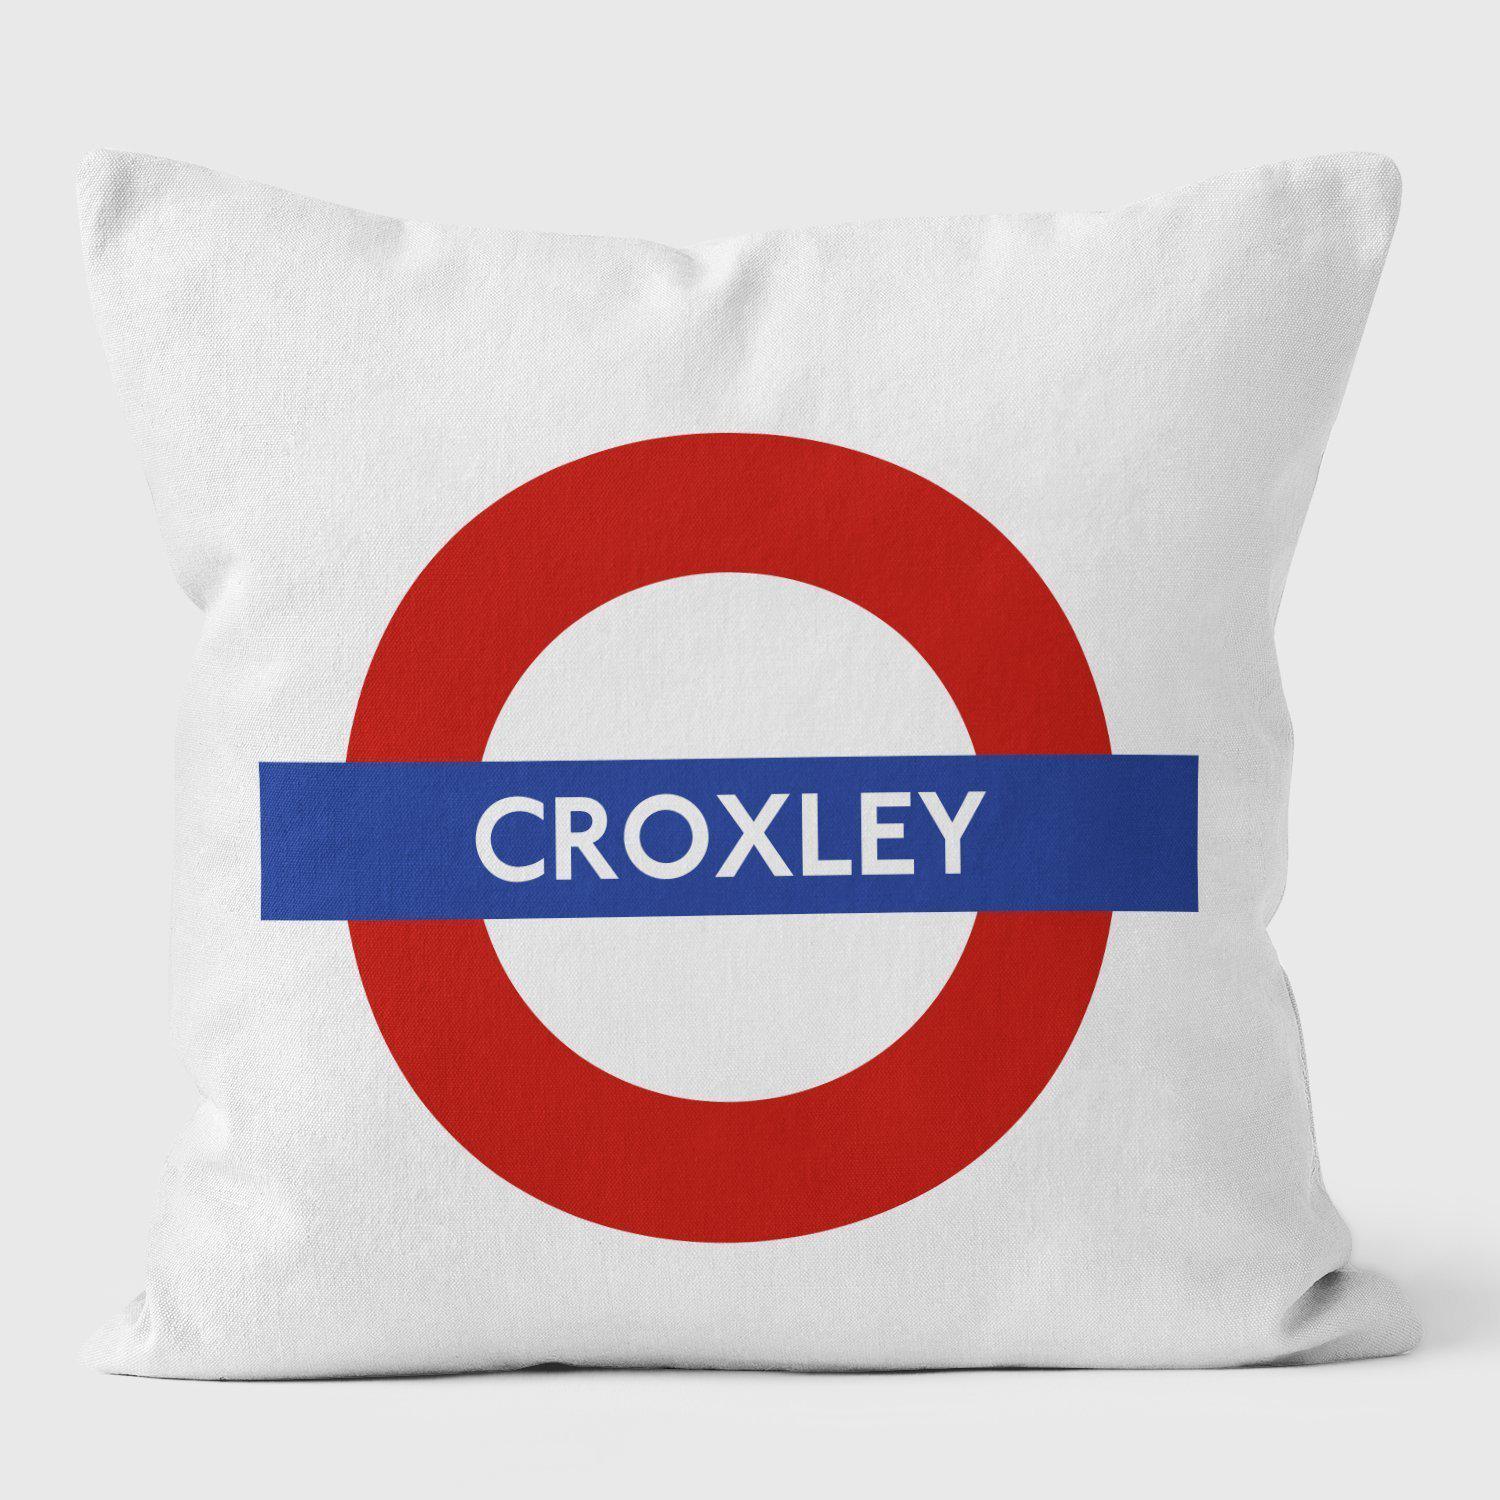 Croxley London Underground Tube Station Roundel Cushion - Handmade Cushions UK - WeLoveCushions